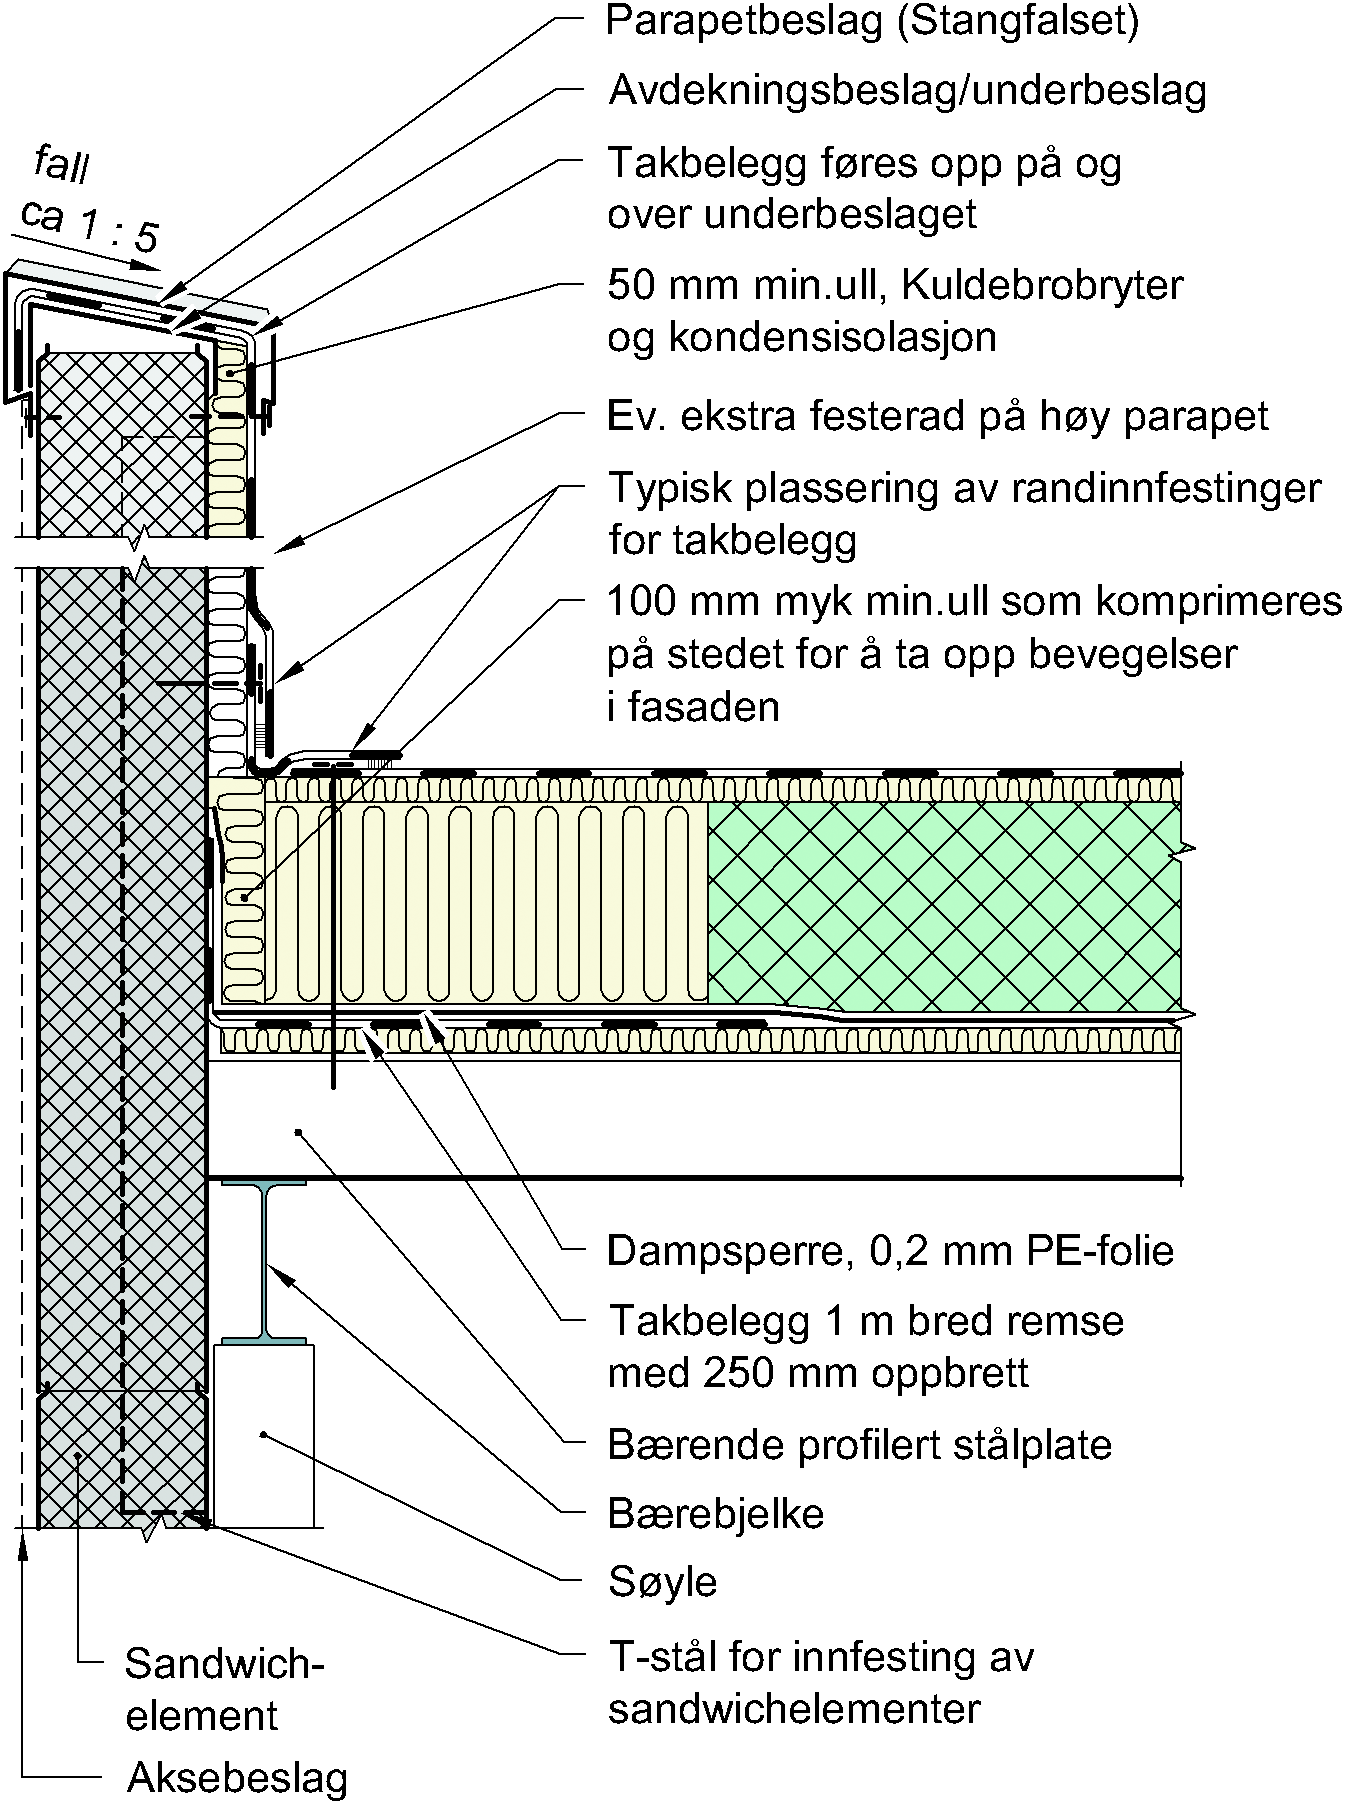 Fig. 1b Eksempel på overgang mellom fasade av sandwichelementer og